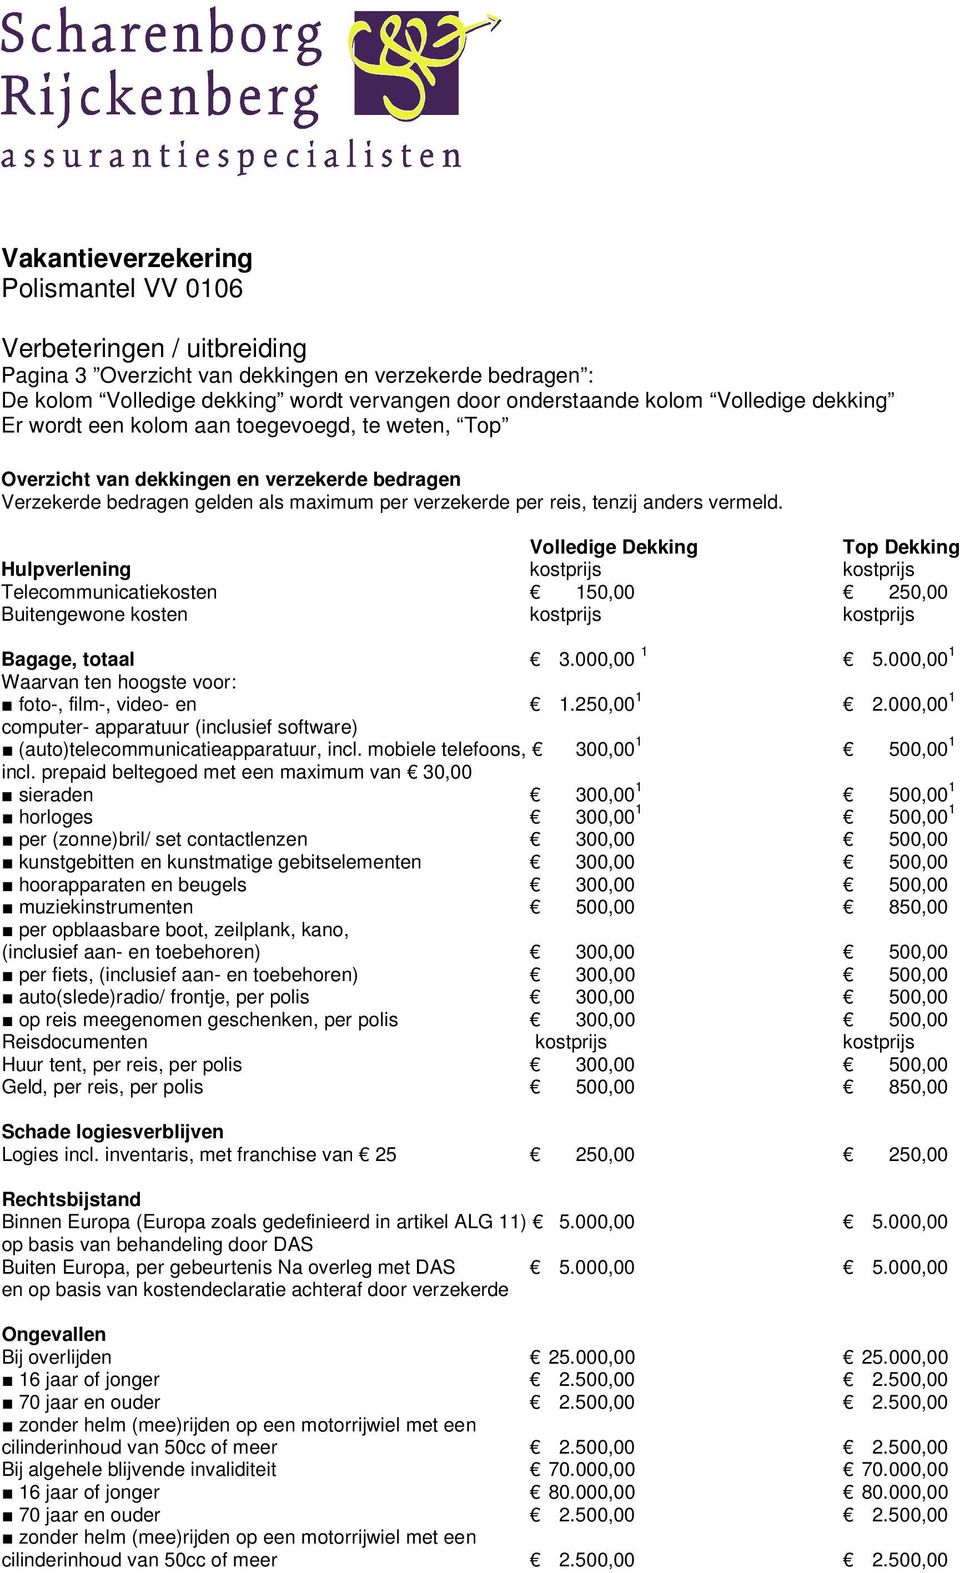 Volledige Dekking Top Dekking Hulpverlening kostprijs kostprijs Telecommunicatiekosten 150,00 250,00 Buitengewone kosten kostprijs kostprijs Bagage, totaal 3.000,00 1 5.